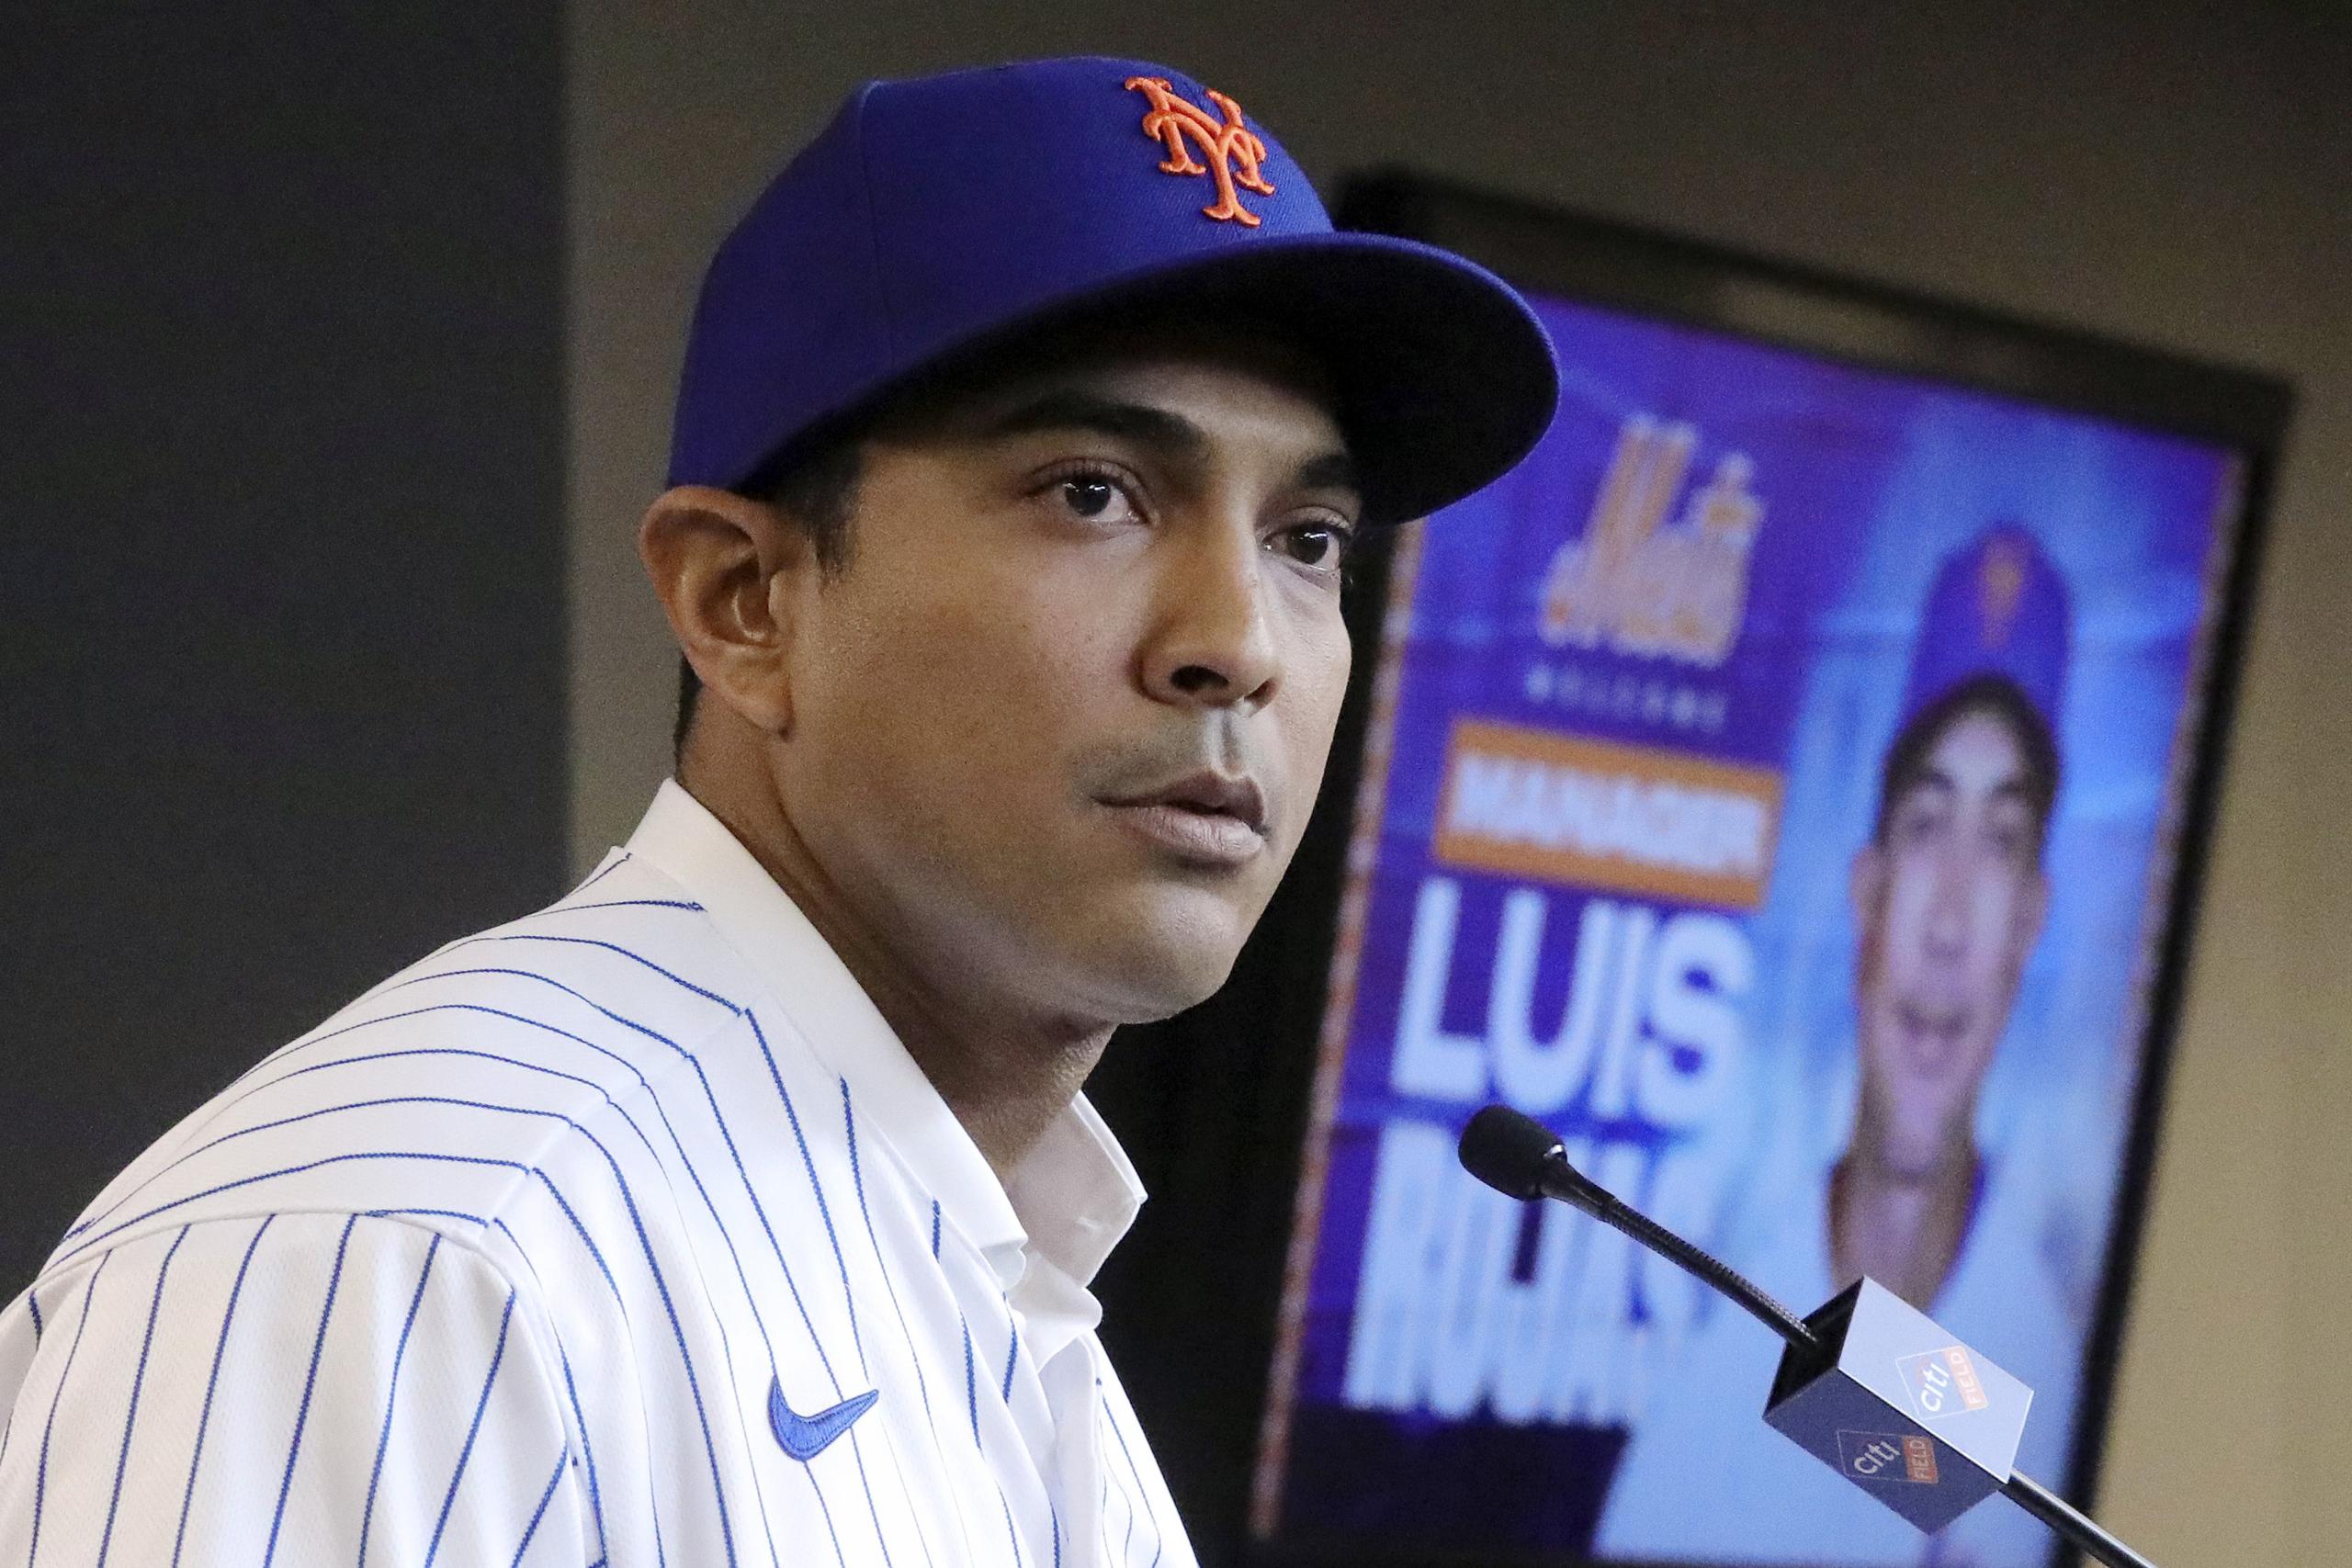 ARCHIVO - En esta foto de archivo del 24 de enero de 2020, el manager dominicano de los Mets de Nueva York, Luis Rojas, habla en la conferencia de prensa en la que fue presentado (AP Foto/Bebeto Matthews, archivo)